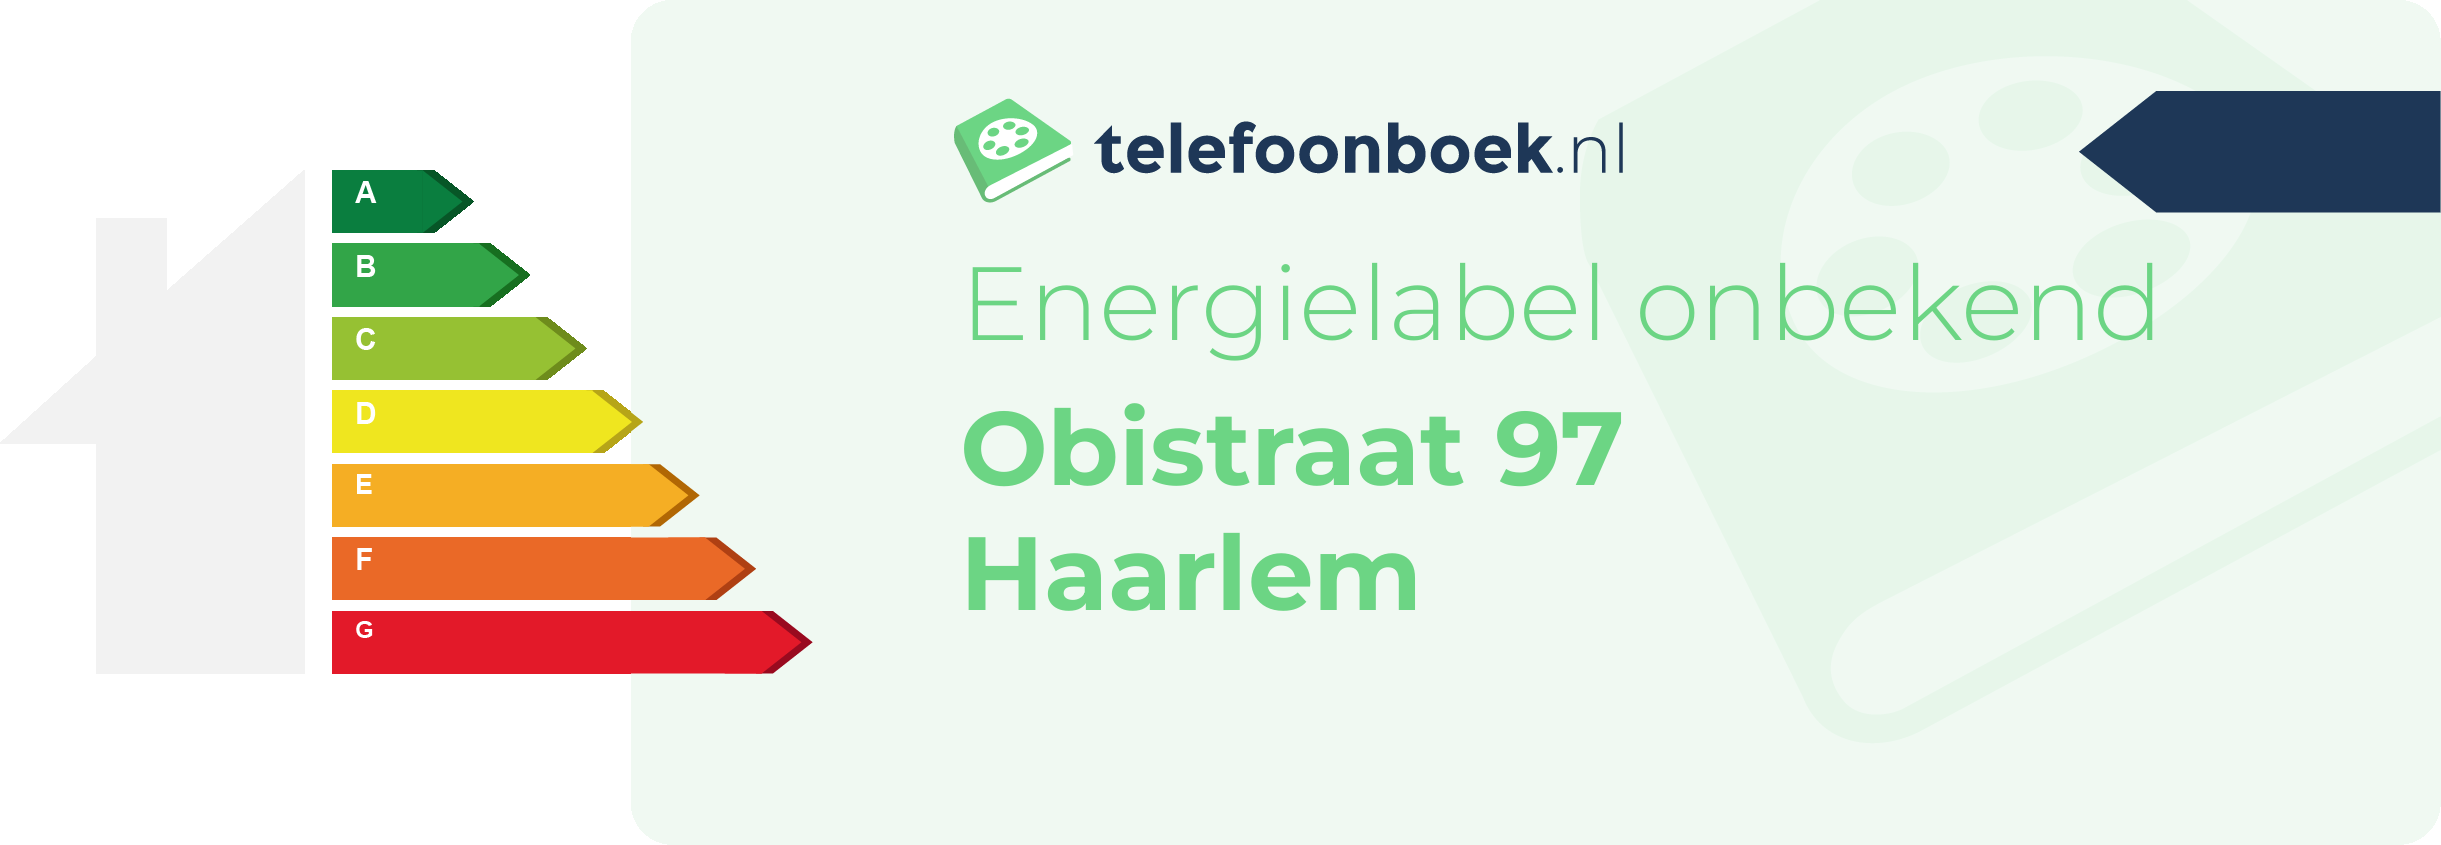 Energielabel Obistraat 97 Haarlem